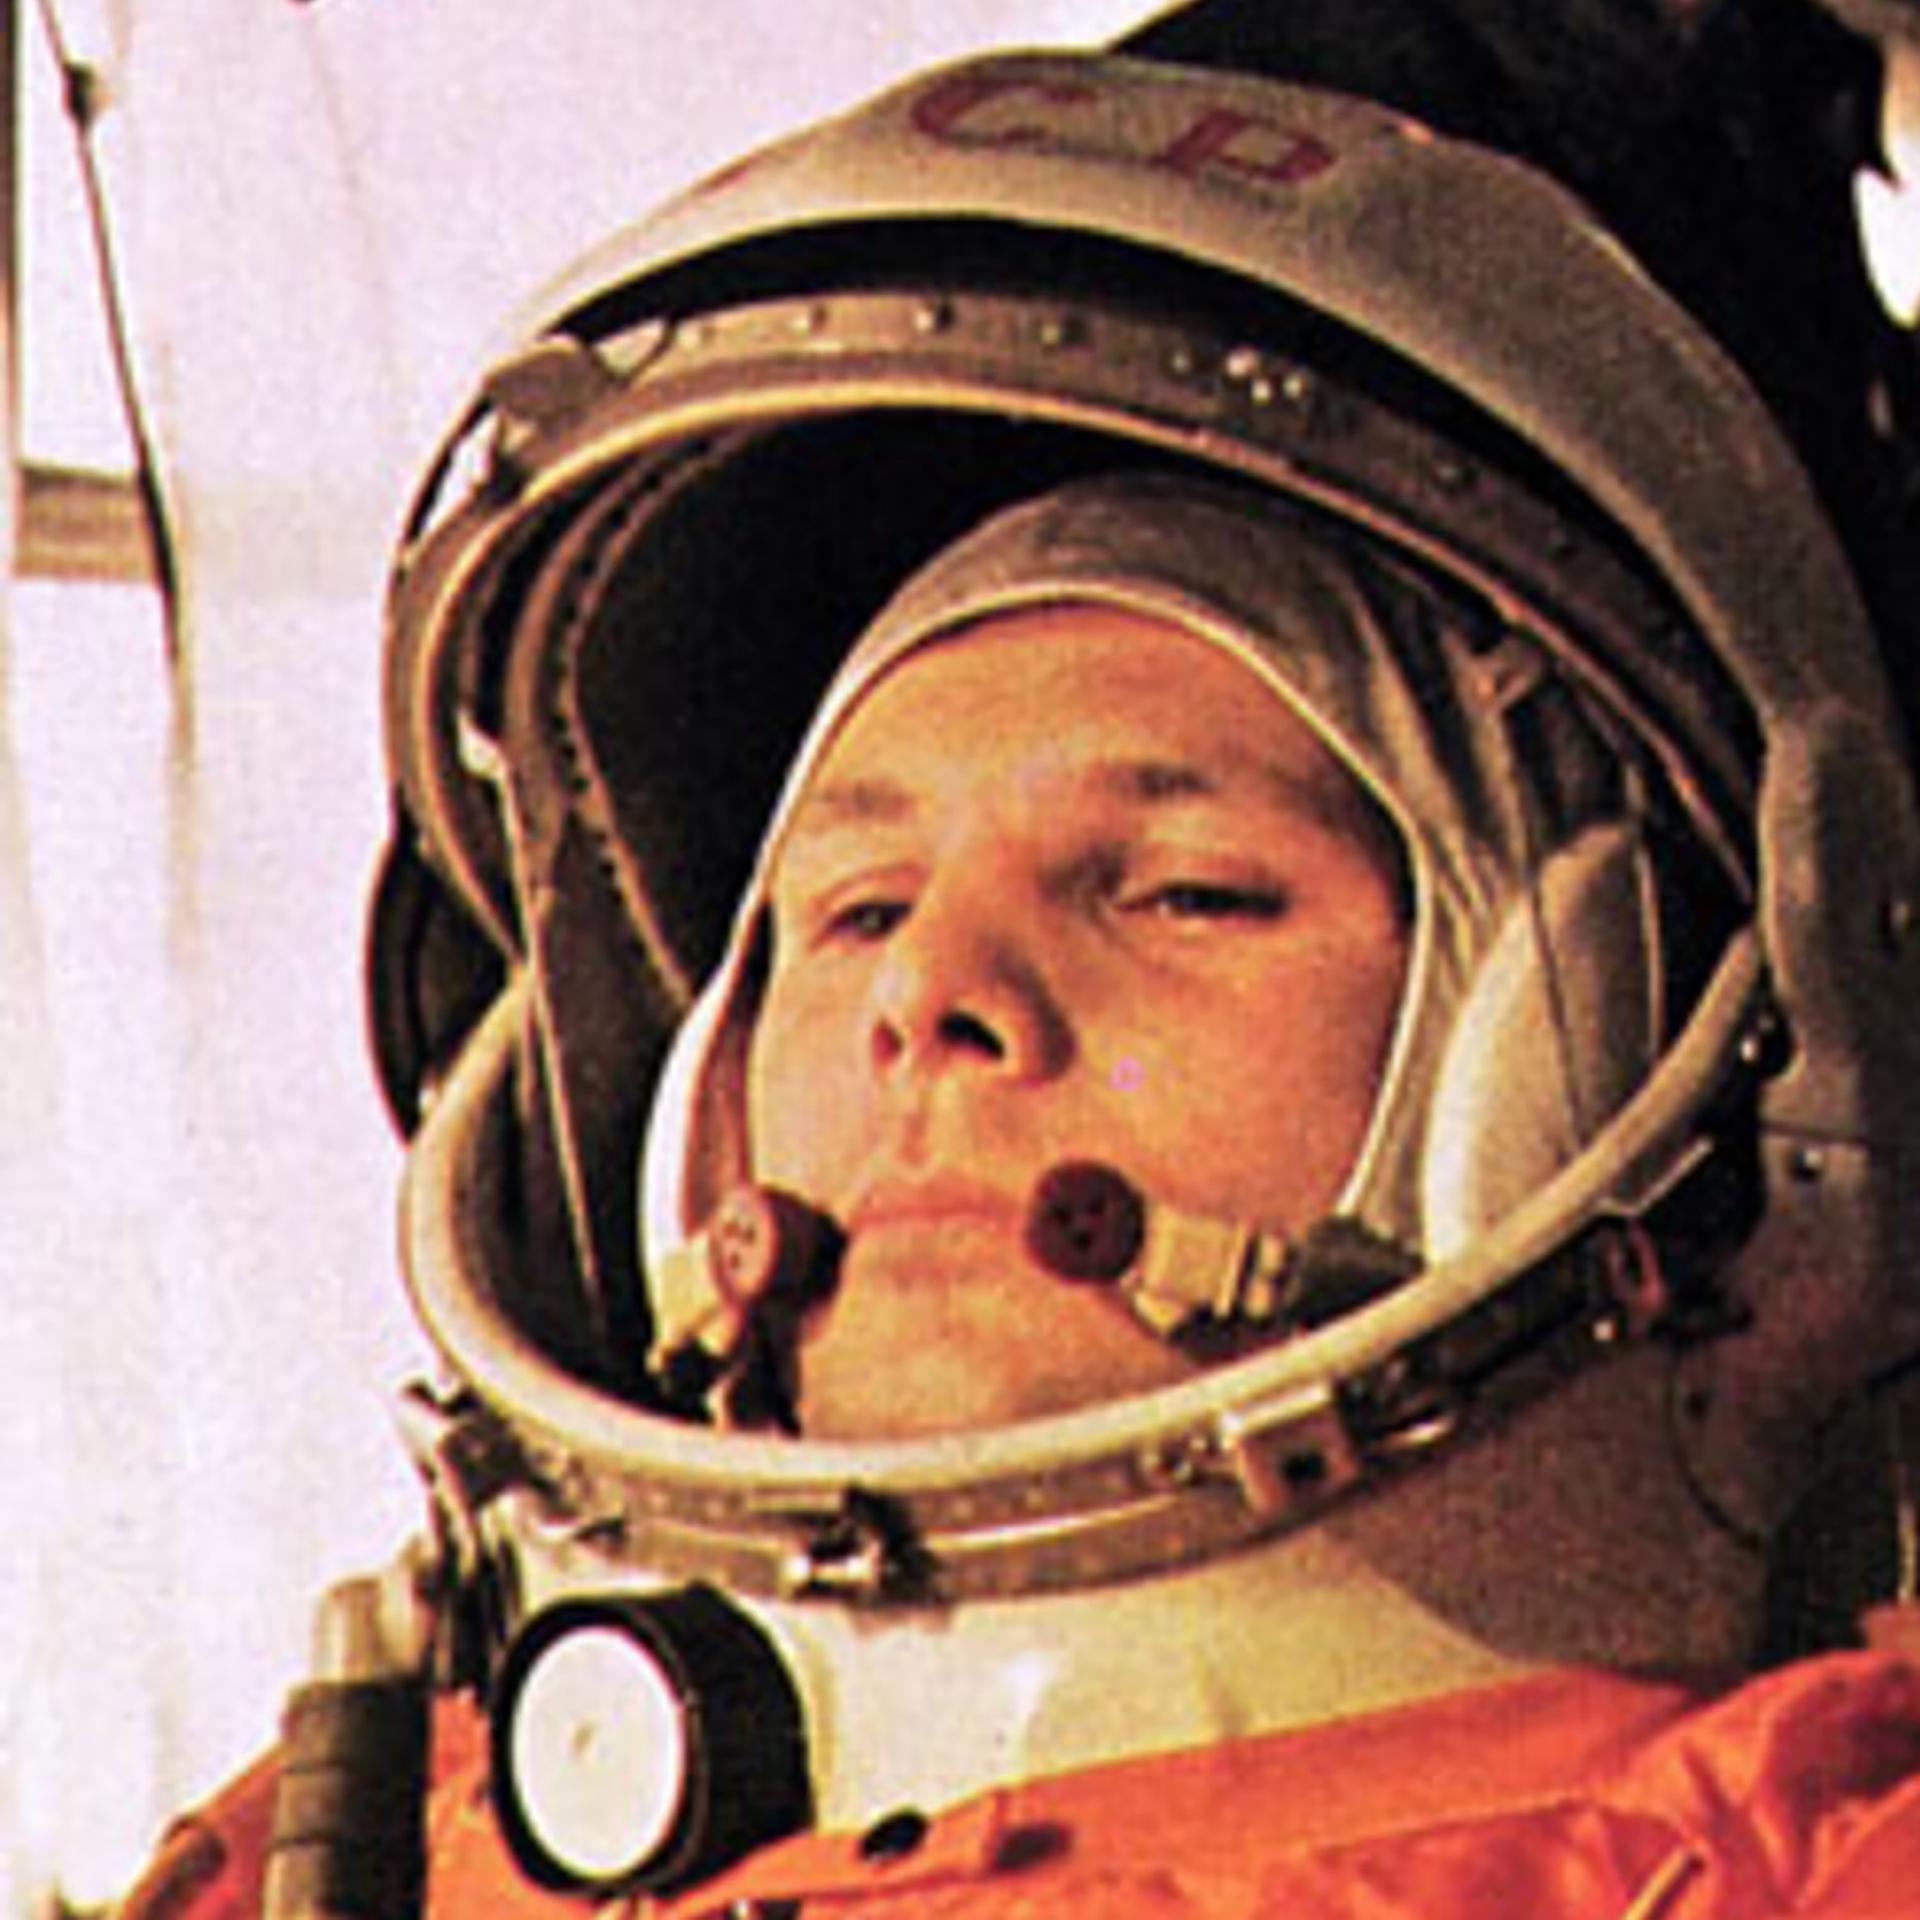 Kurioser Weltraumsong - Gagarin, die Affenschande und ein FDJ-Lied